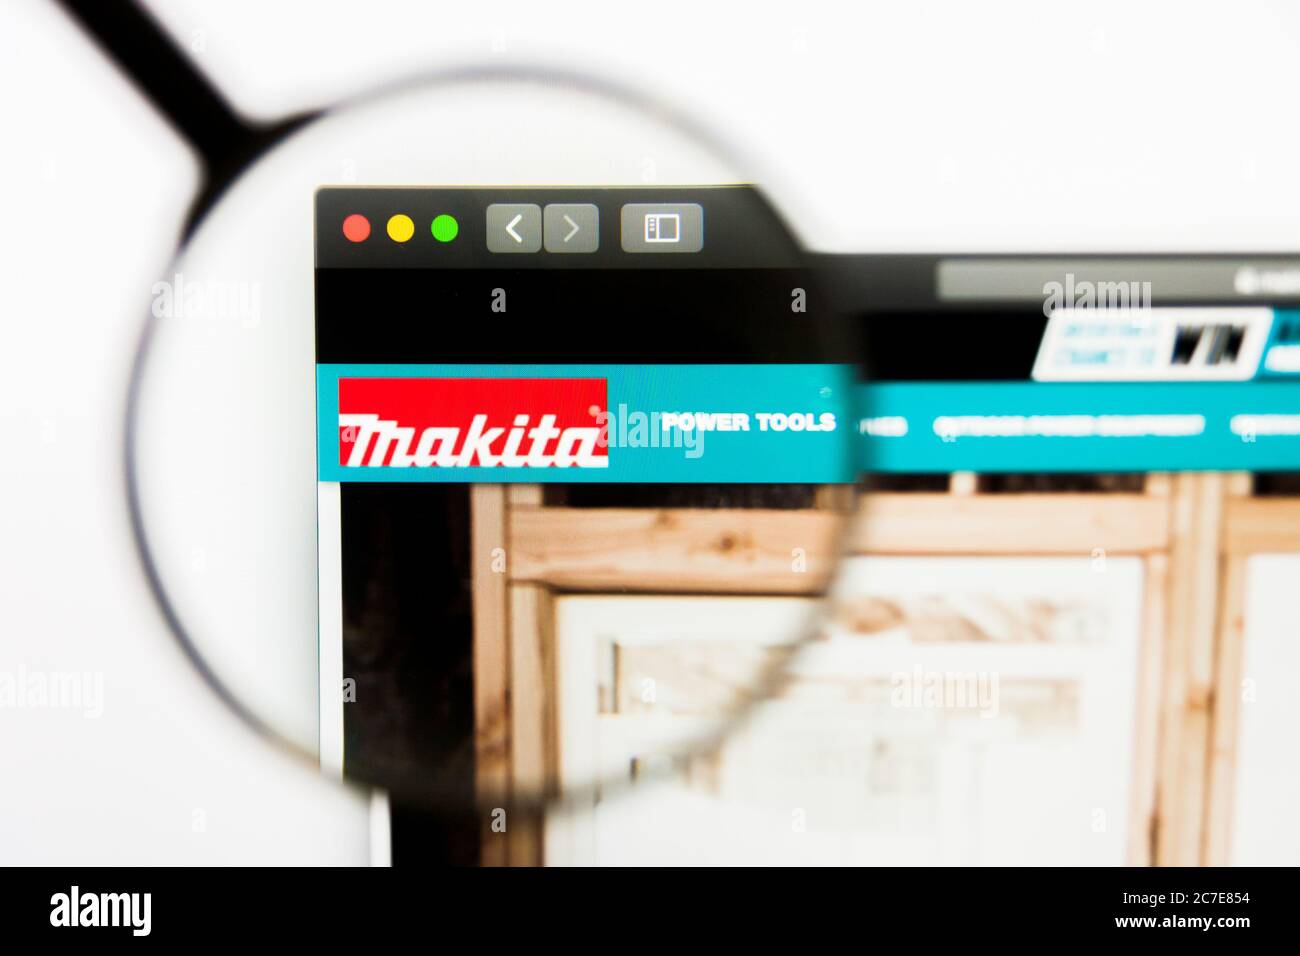 Makita immagini e fotografie stock ad alta risoluzione - Alamy